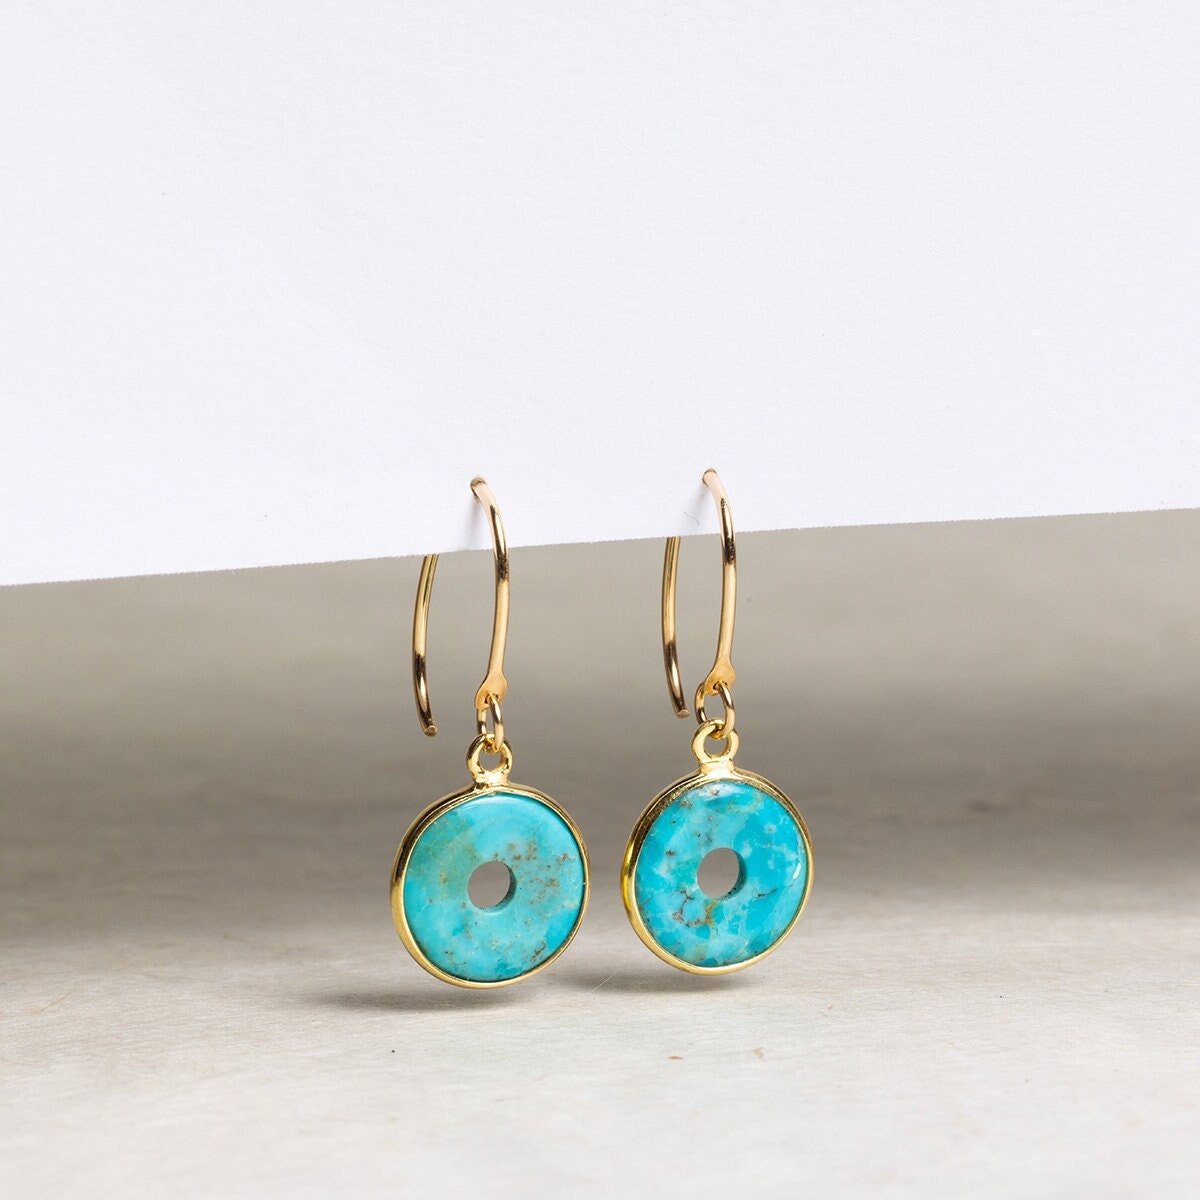 Turquoise Dangle Drop Earrings w/ 14k Gold Filled Ear-Wires Earrings Soul & Little Rose   